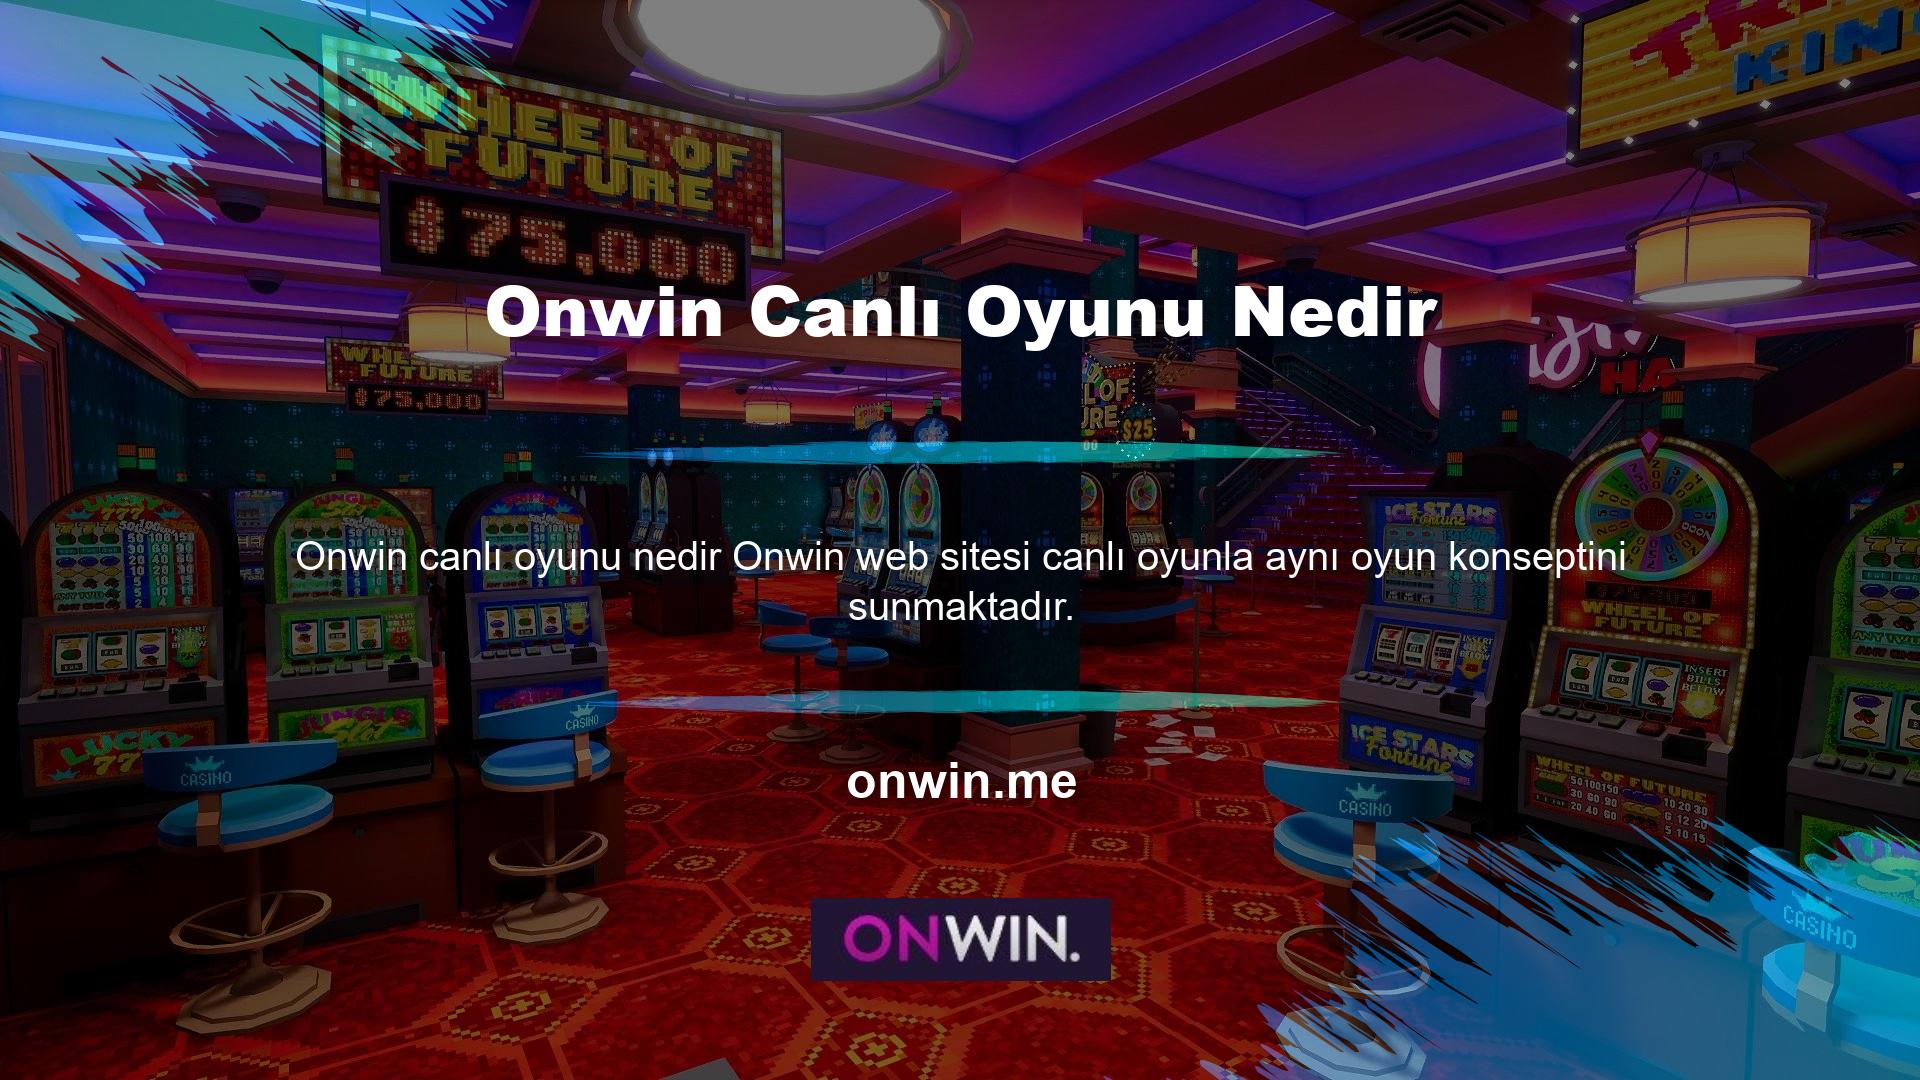 Bu bölümde yeni Onwin giriş adresinizle çeşitli oyun seçenekleri sunulmaktadır